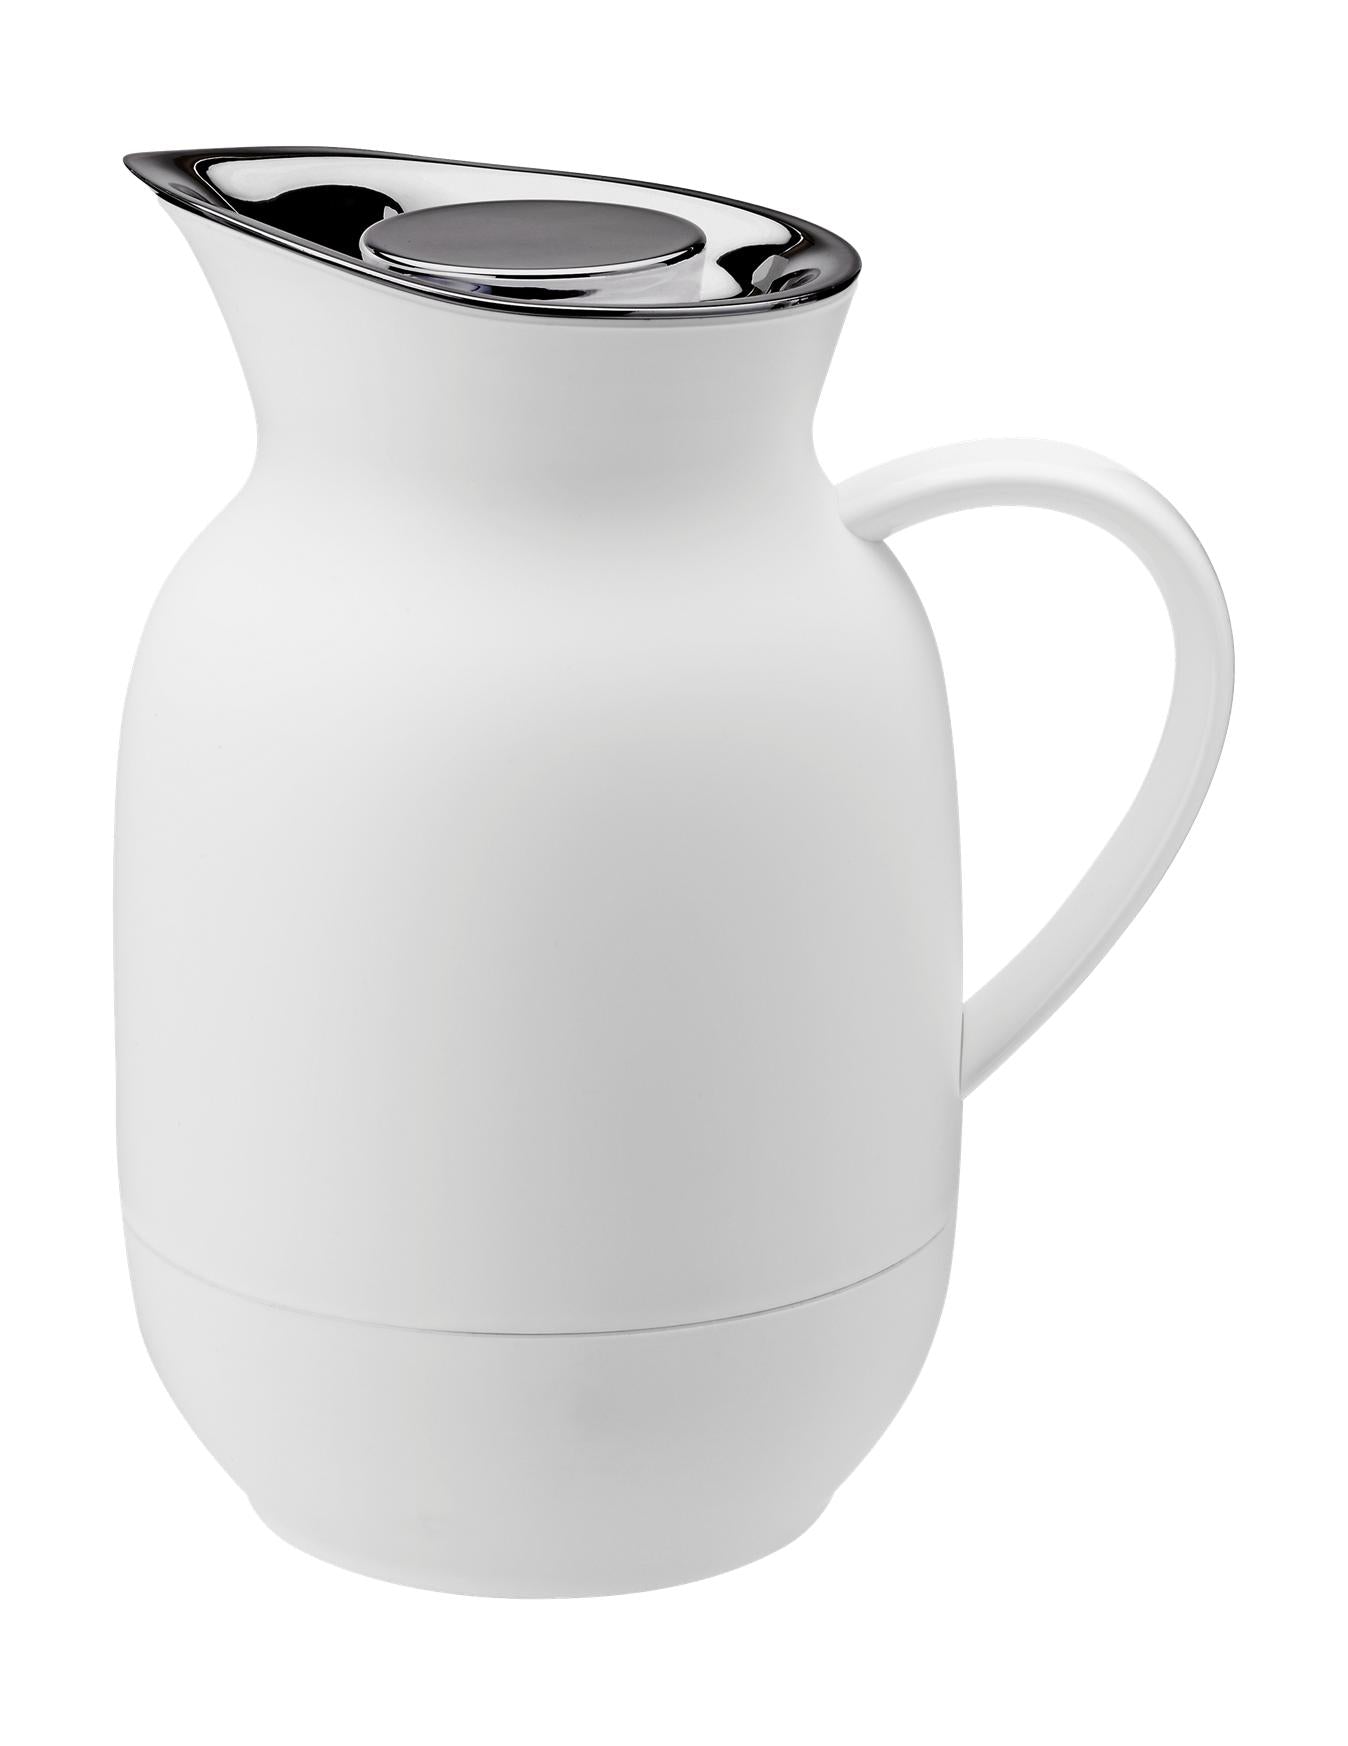 Stelton Amphora vacuümpot koffie 1 l, zacht wit